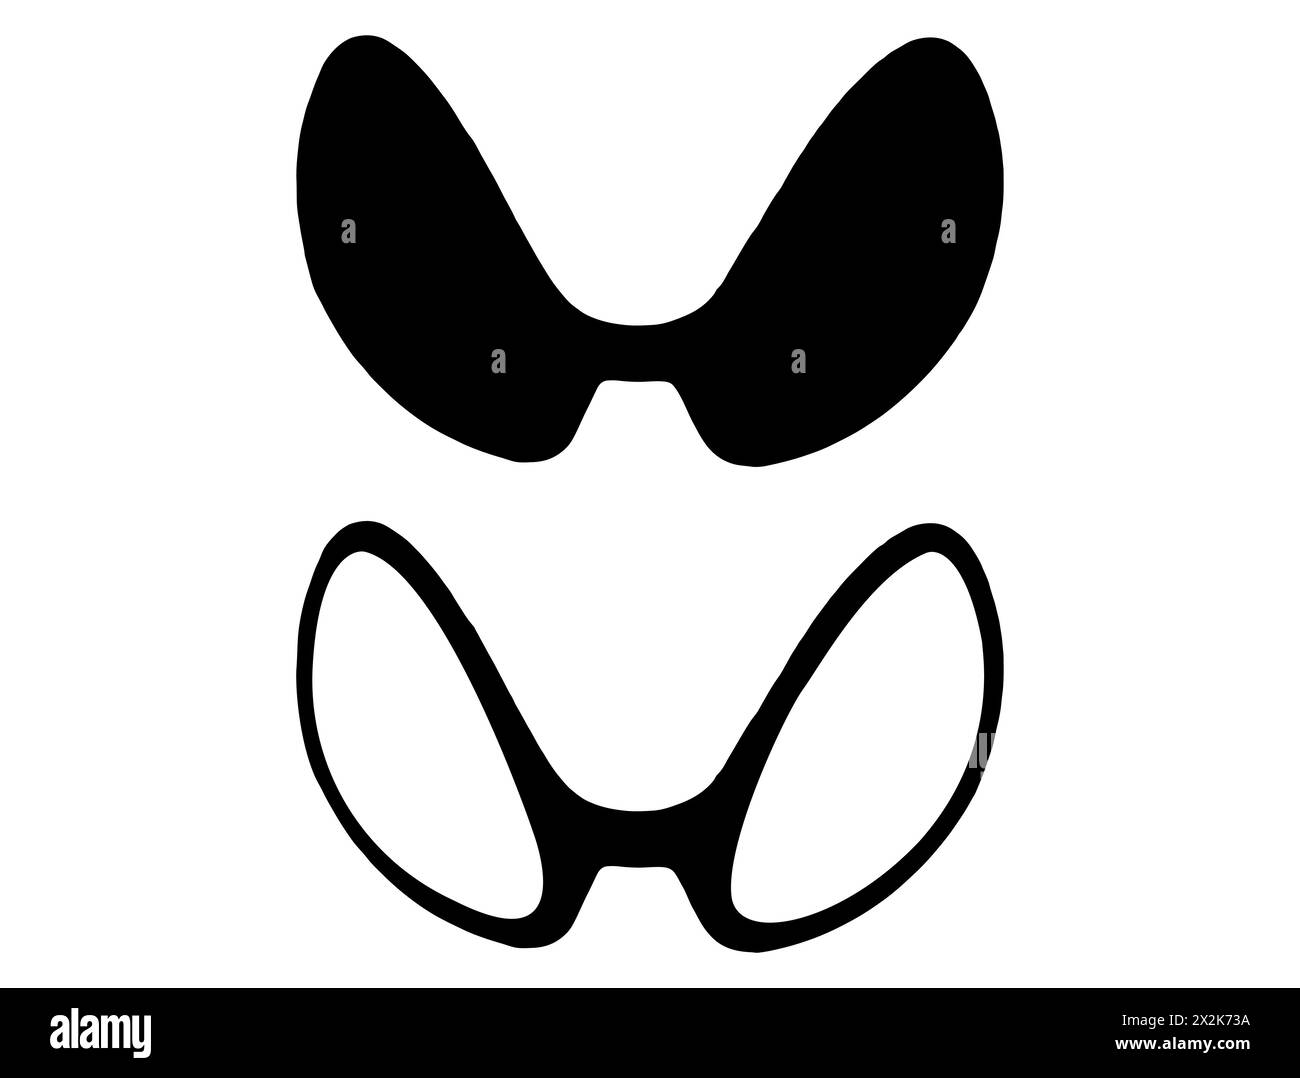 Alien glasses silhouette vector art Stock Vector